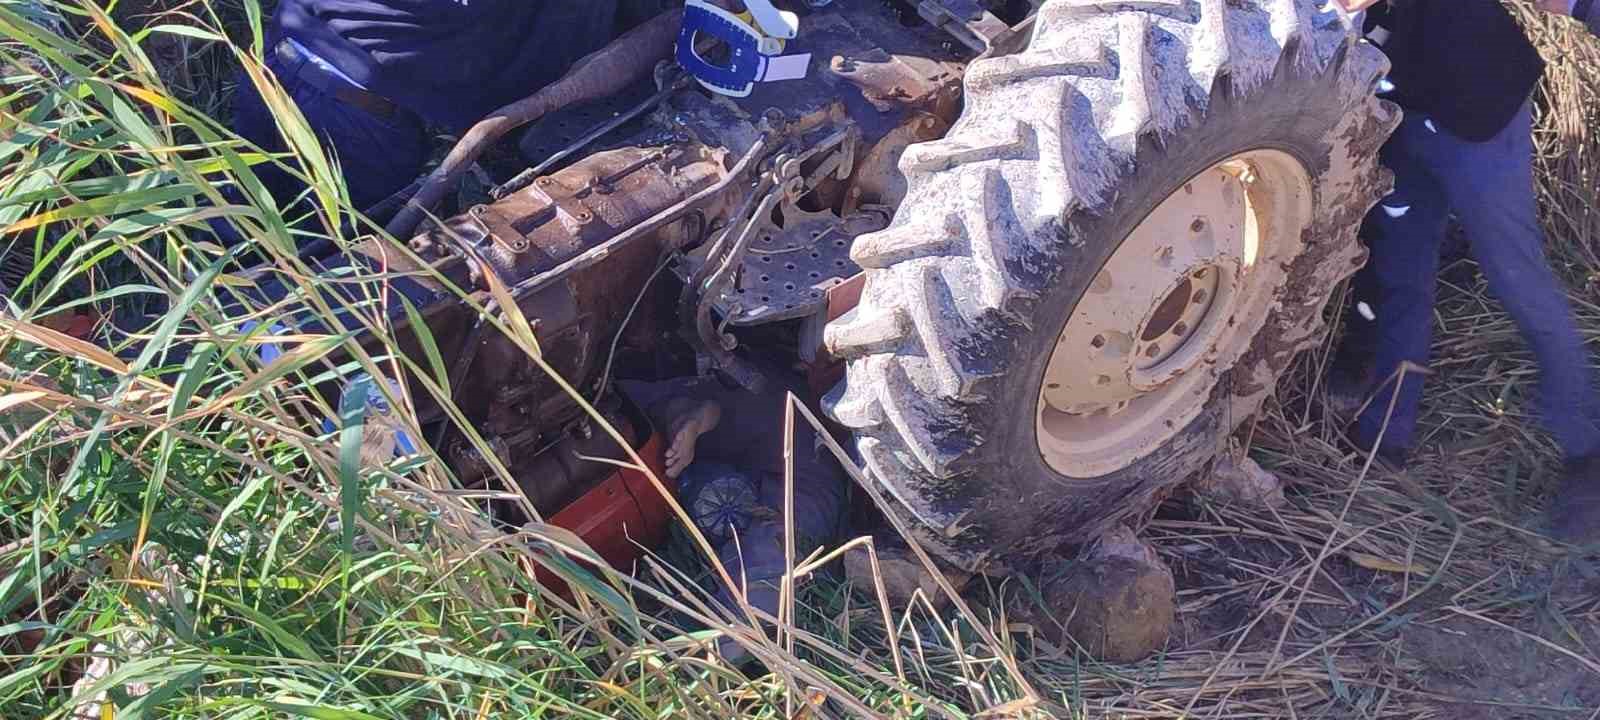 Devrilen traktörün altında kalan sürücü ağır yaralandı
